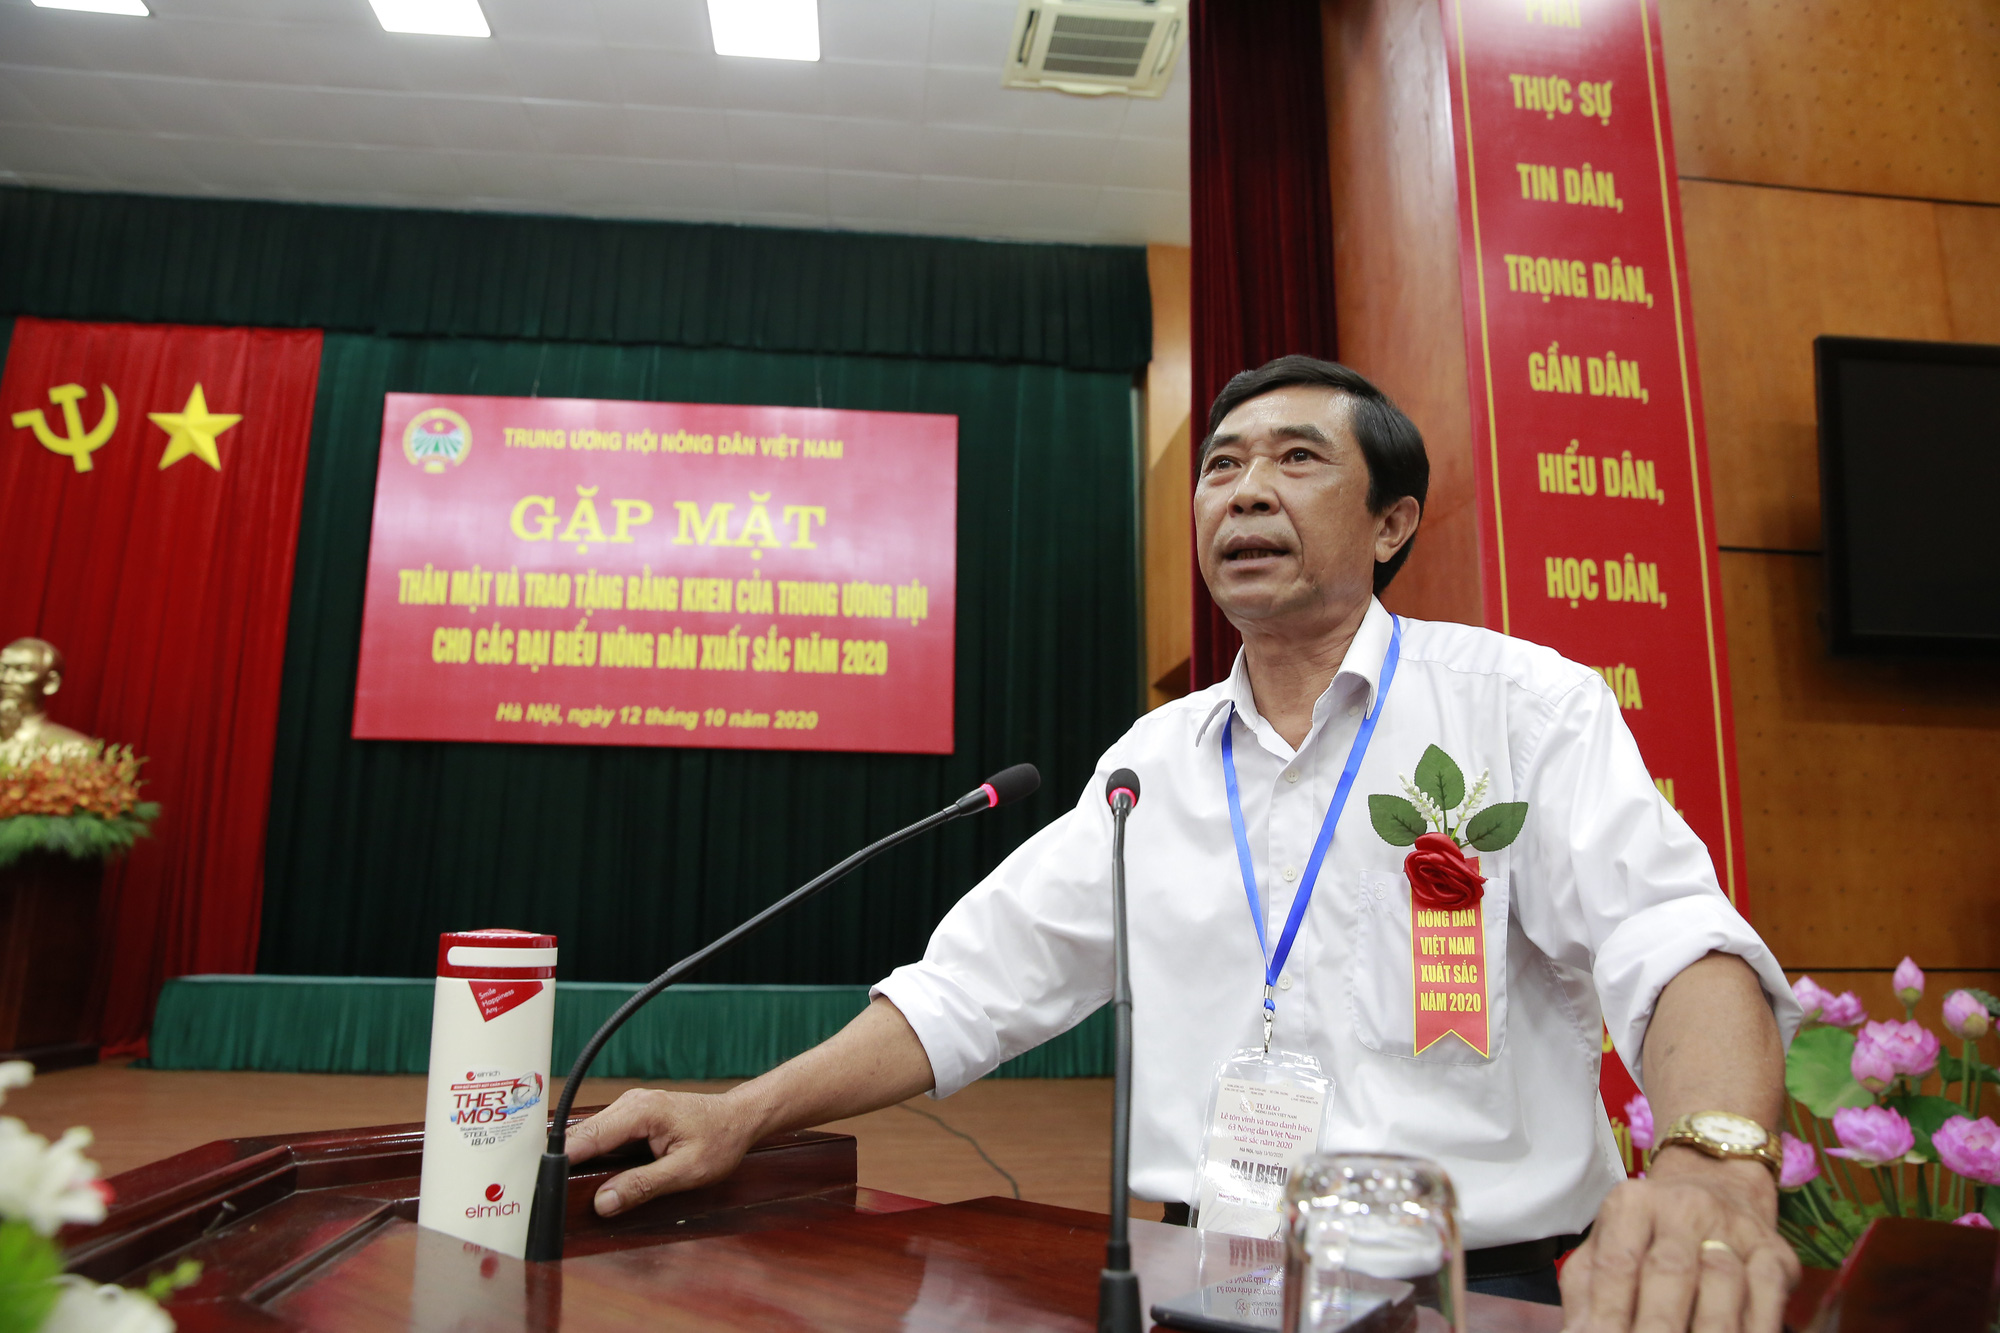 Nông dân Việt Nam xuất sắc 2020: Cần hỗ trợ vốn để đầu tư sản xuất nông nghiệp công nghệ cao - Ảnh 4.